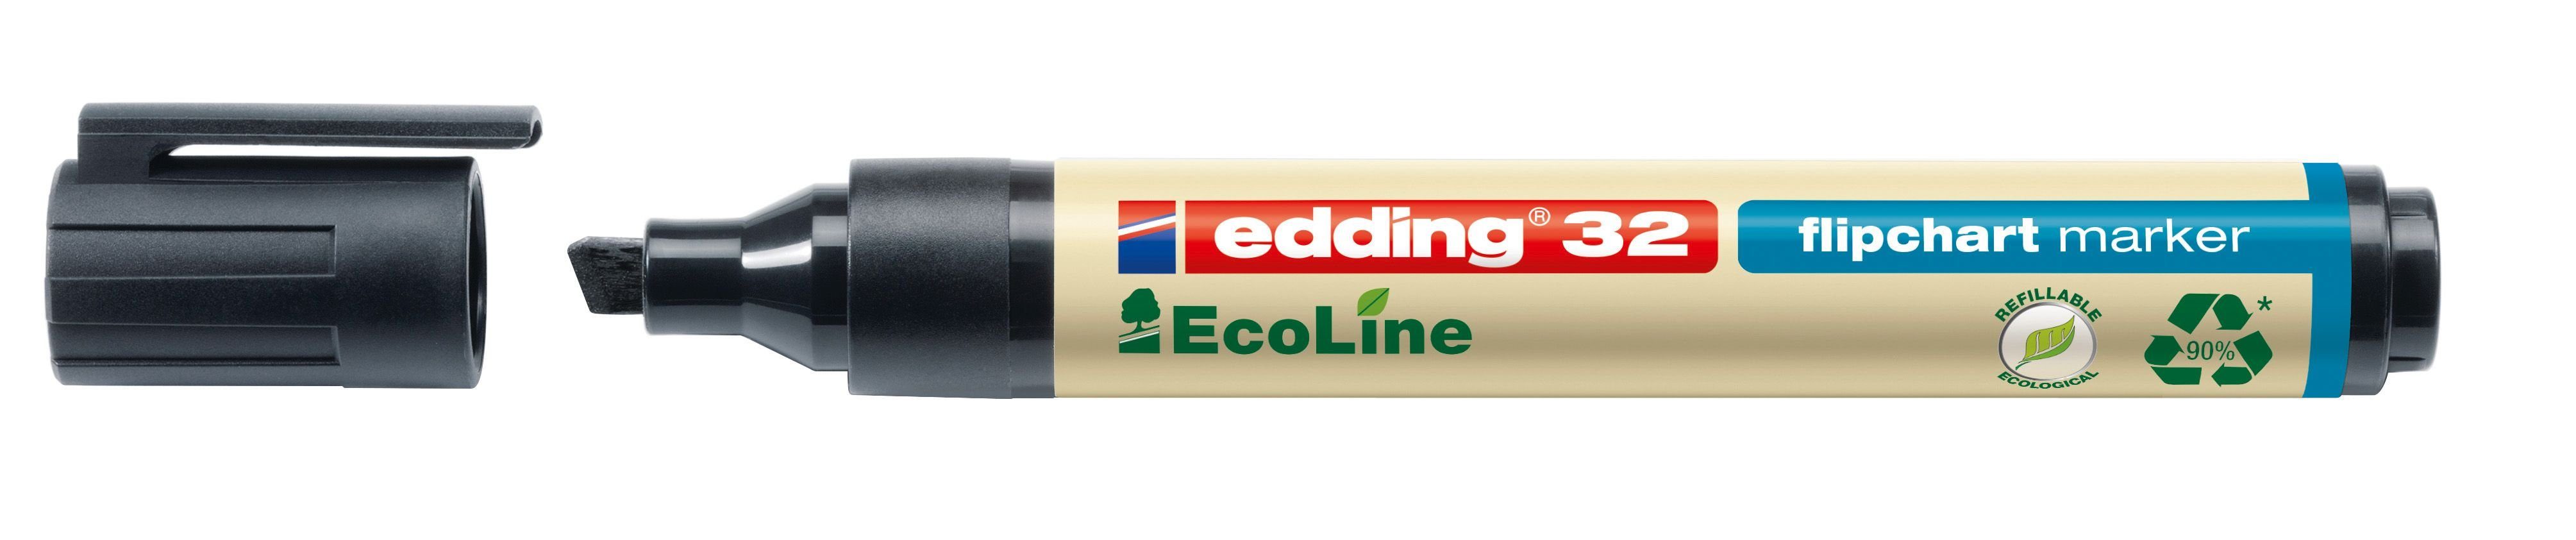 mm, EcoLine edding nachfüllbar, 32 Flipchartmarker - Dekokissen 5 - 1 schwarz